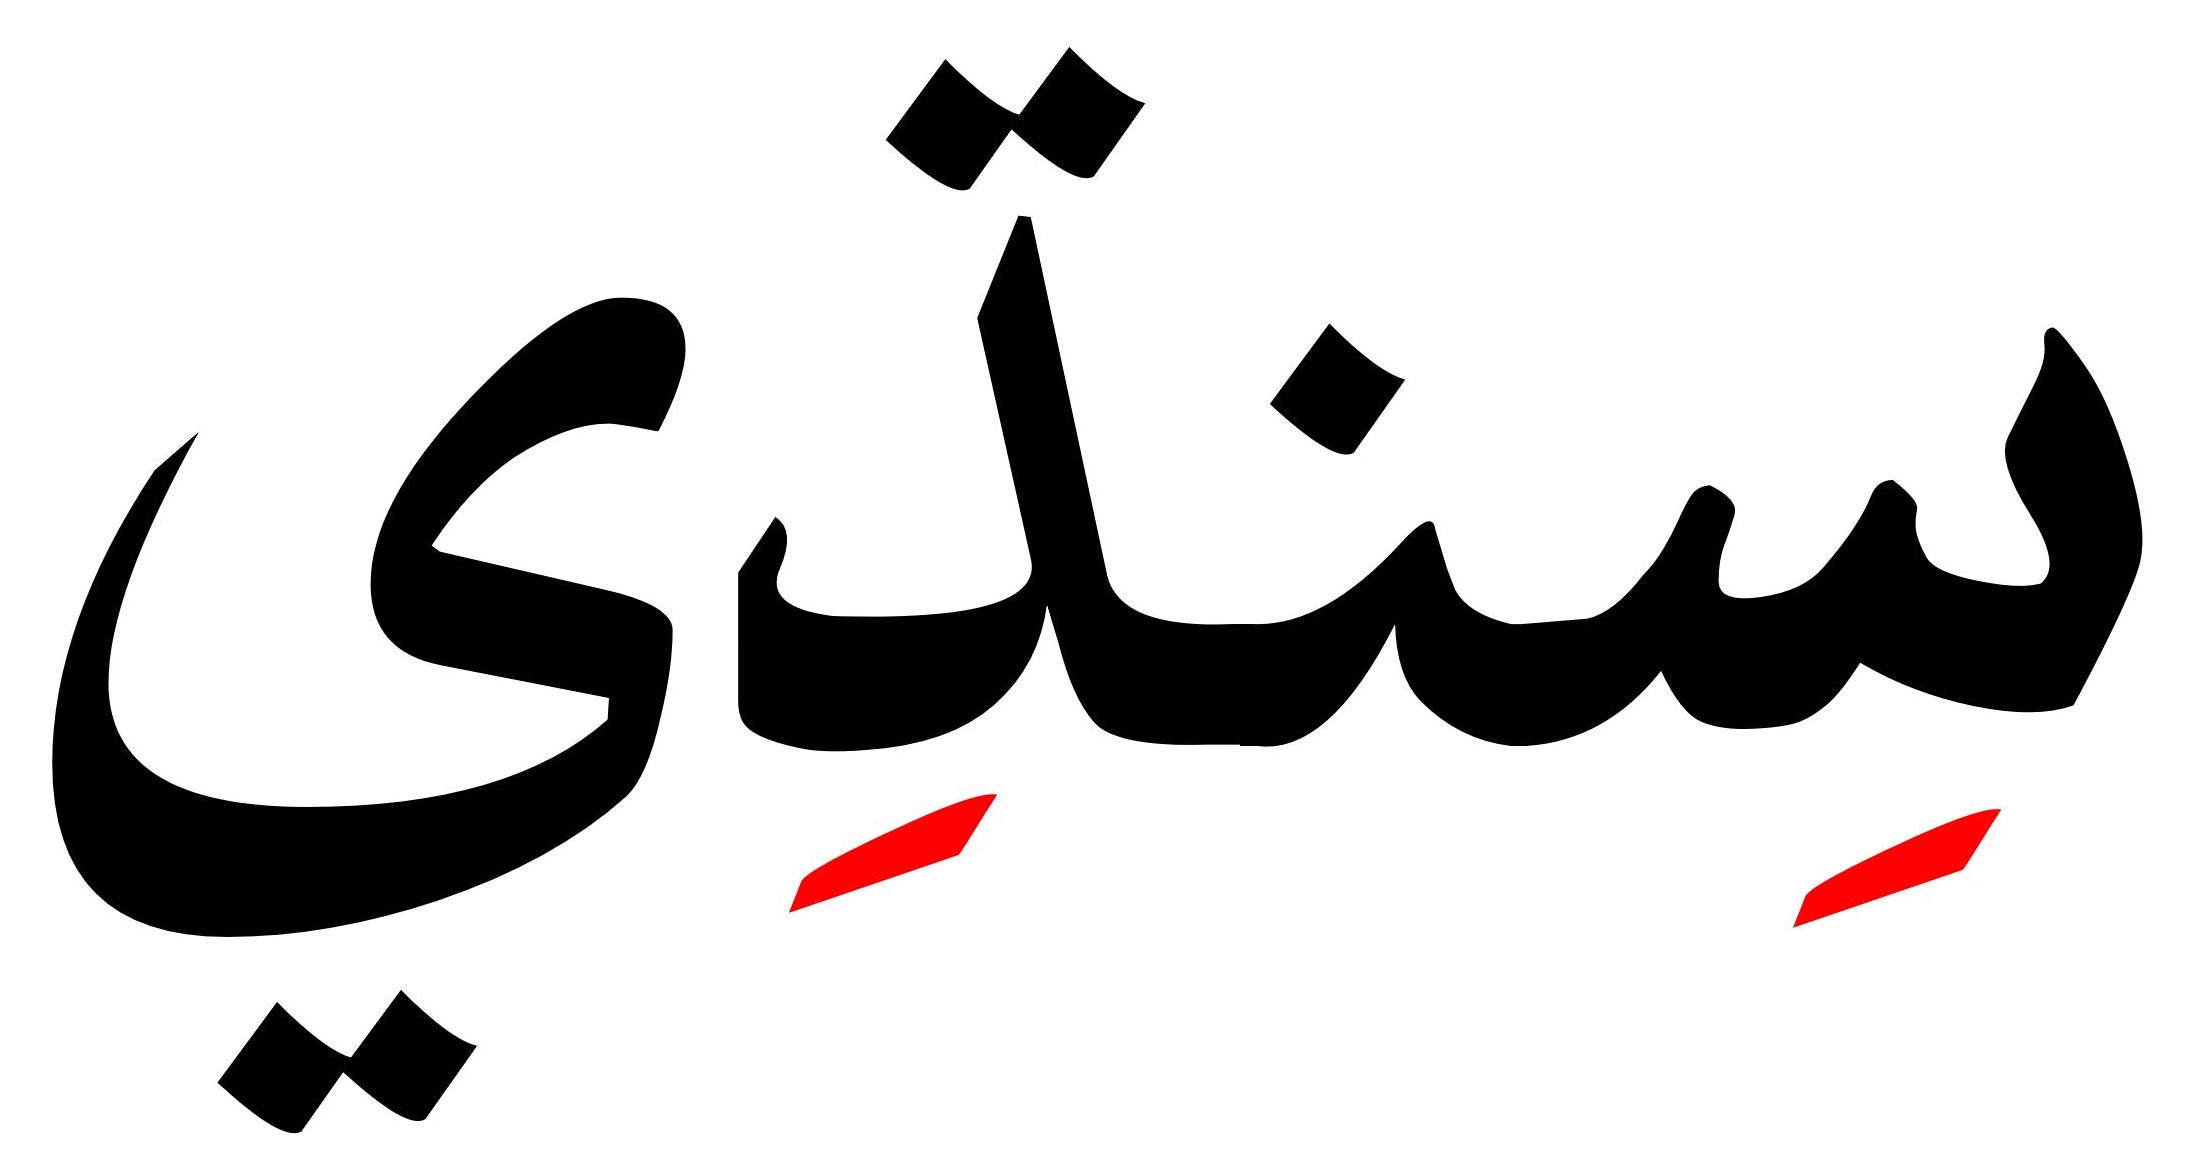 Sindhi_in_Arabic_script